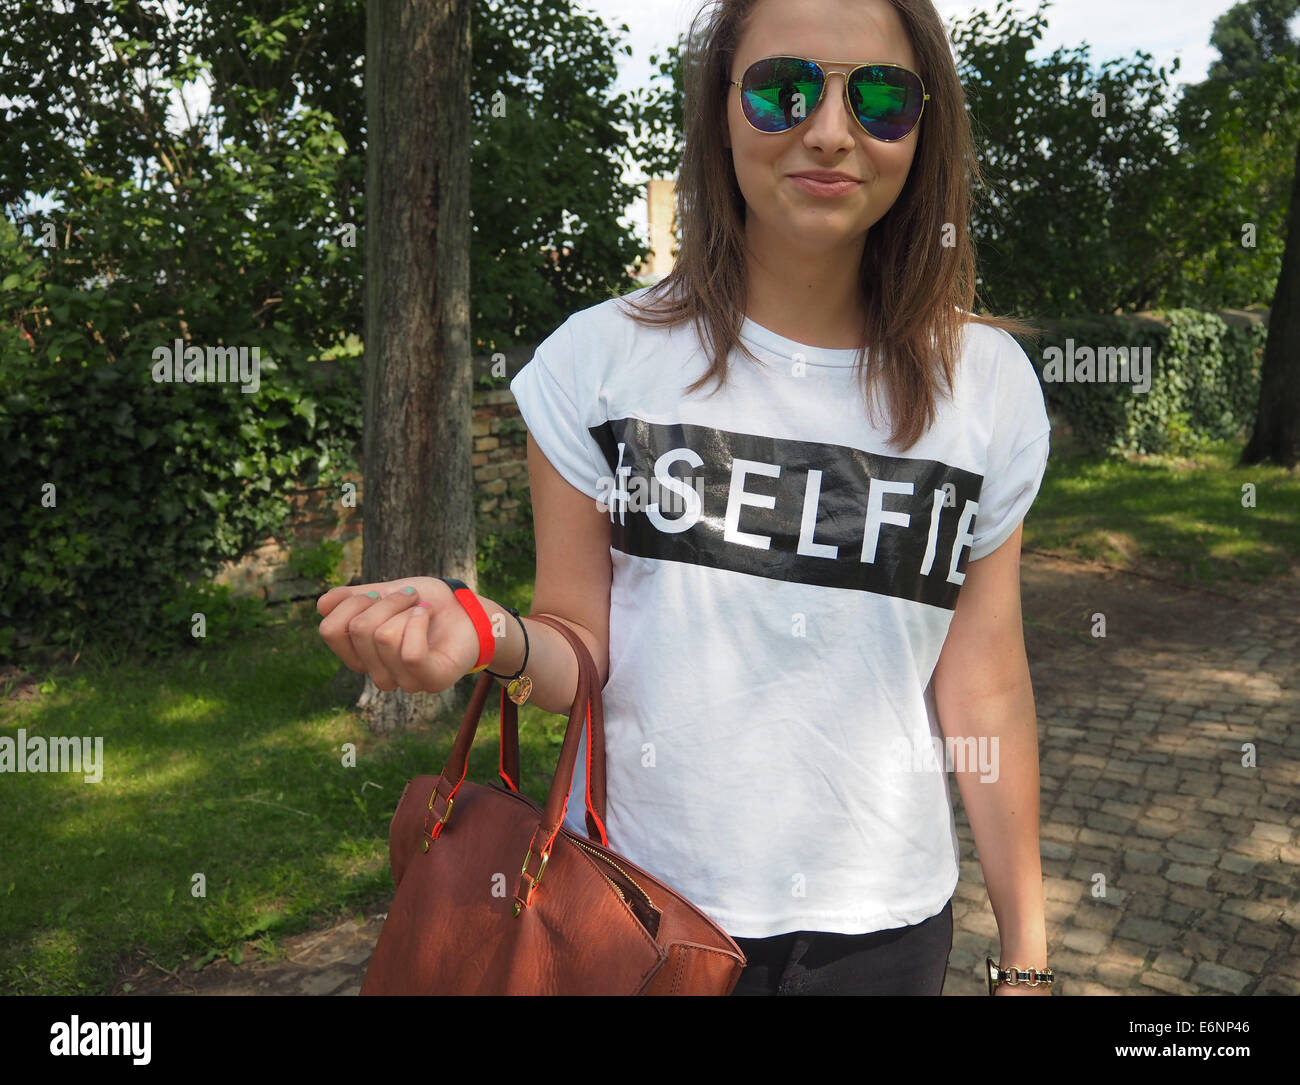 Eine junge Frau aus Polen trägt ein T-shirt, auf dem das Wort Selfie in  Potsdam, südwestlich von Berlin, 13. Juli 2014 geschrieben ist. Foto:  Wolfram Steinberg dpa Stockfotografie - Alamy